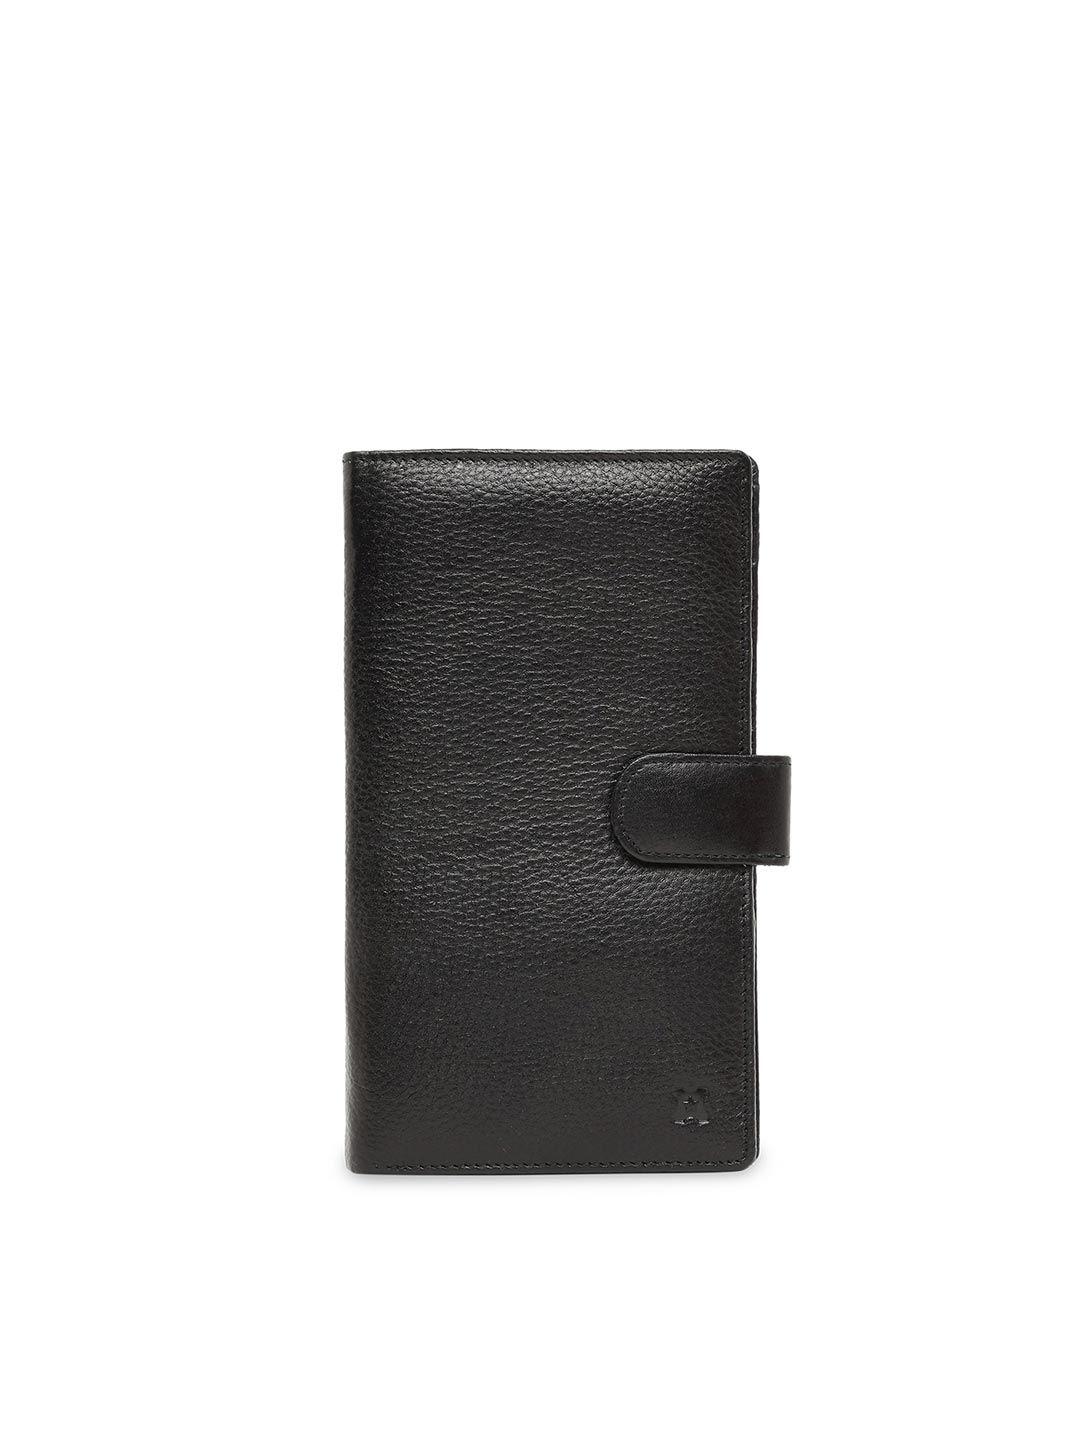 merecer melhor unisex black solid leather passport holder with sim card holder